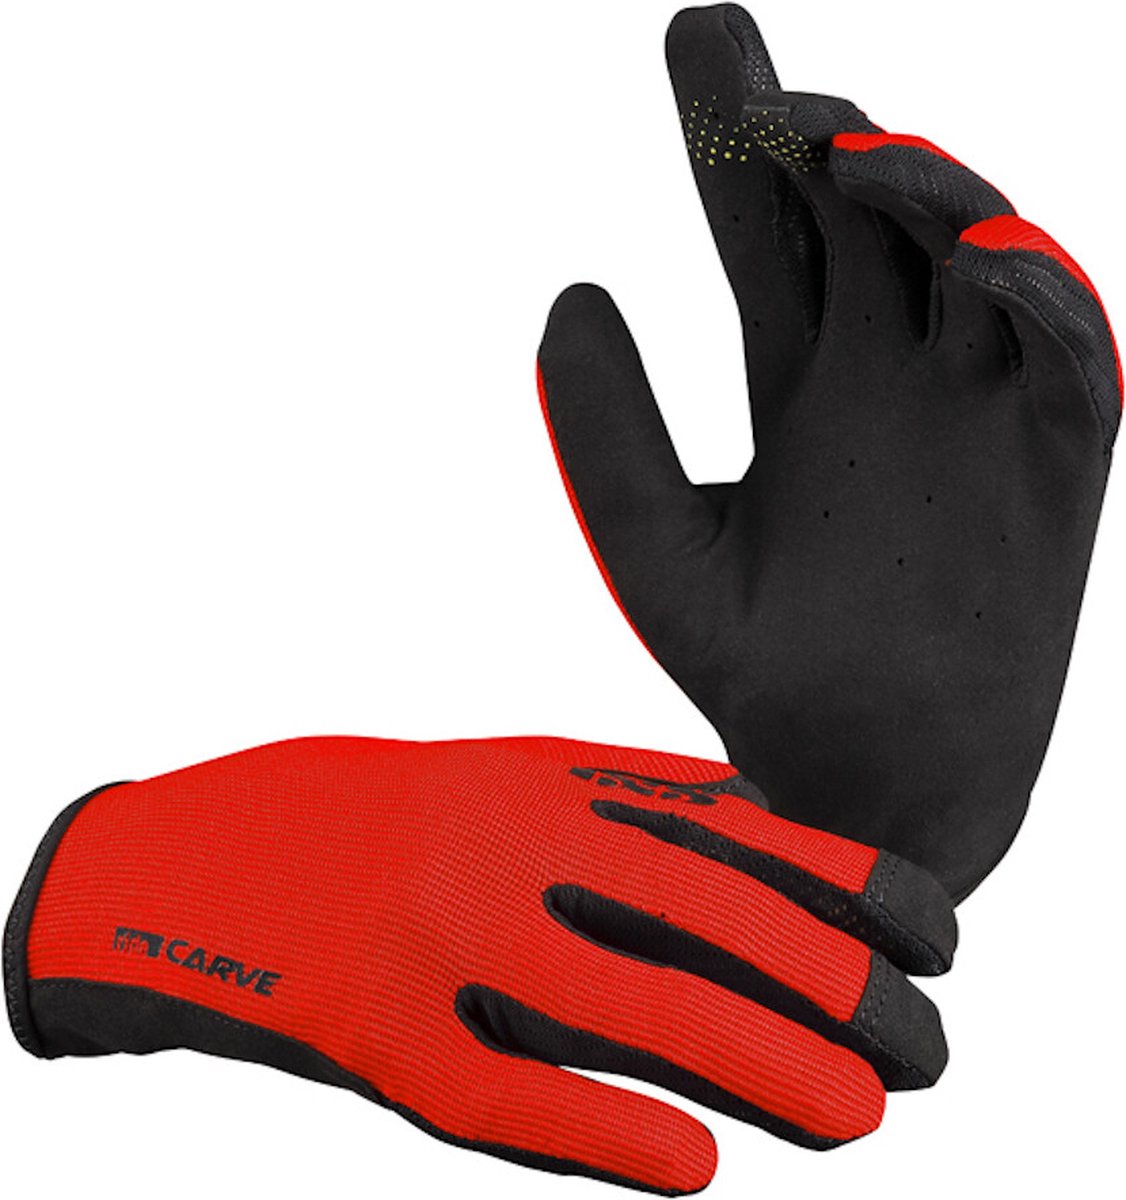 IXS Carve Handschoenen, rood/zwart